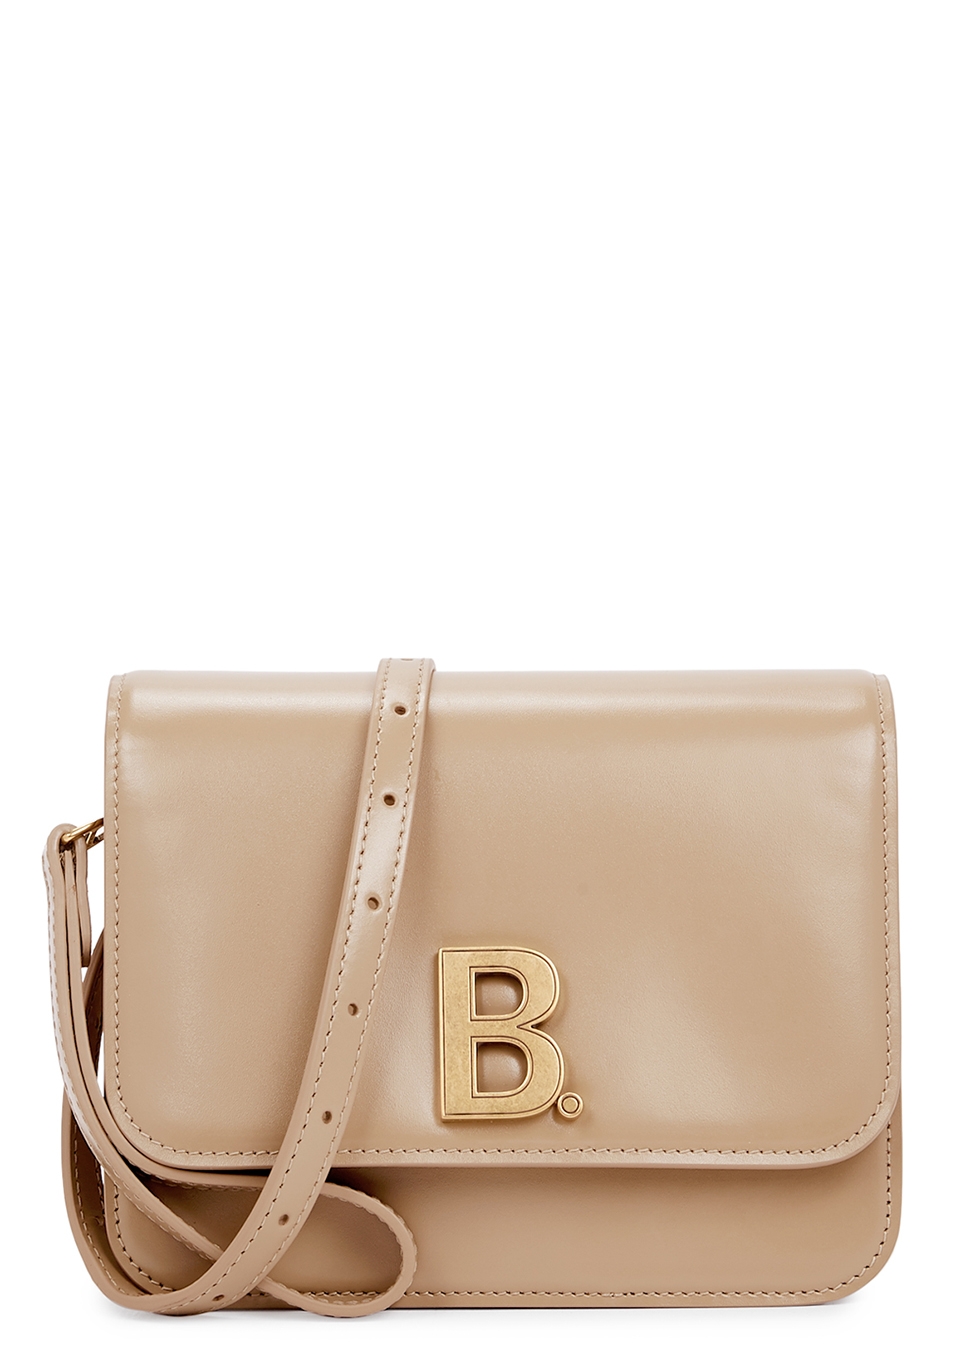 Balenciaga B. beige leather cross-body bag - Harvey Nichols